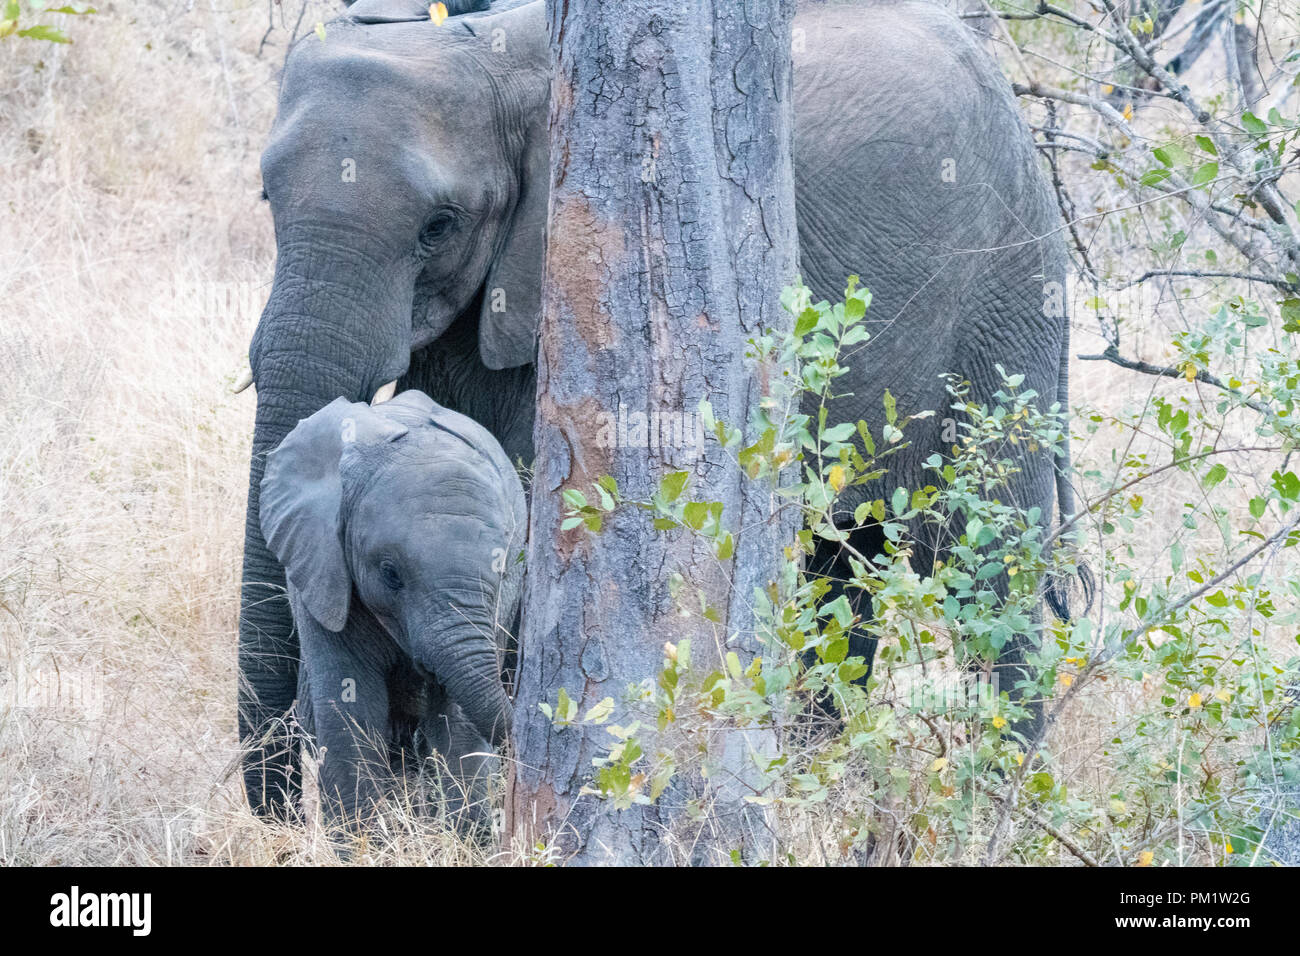 Elefanten mit Baby in bewaldeten Dickicht der Nahrungssuche durch die dichte Vegetation. Trunks sind sichtbar und Babys in der Nähe der Familie, wie sie durch Stockfoto